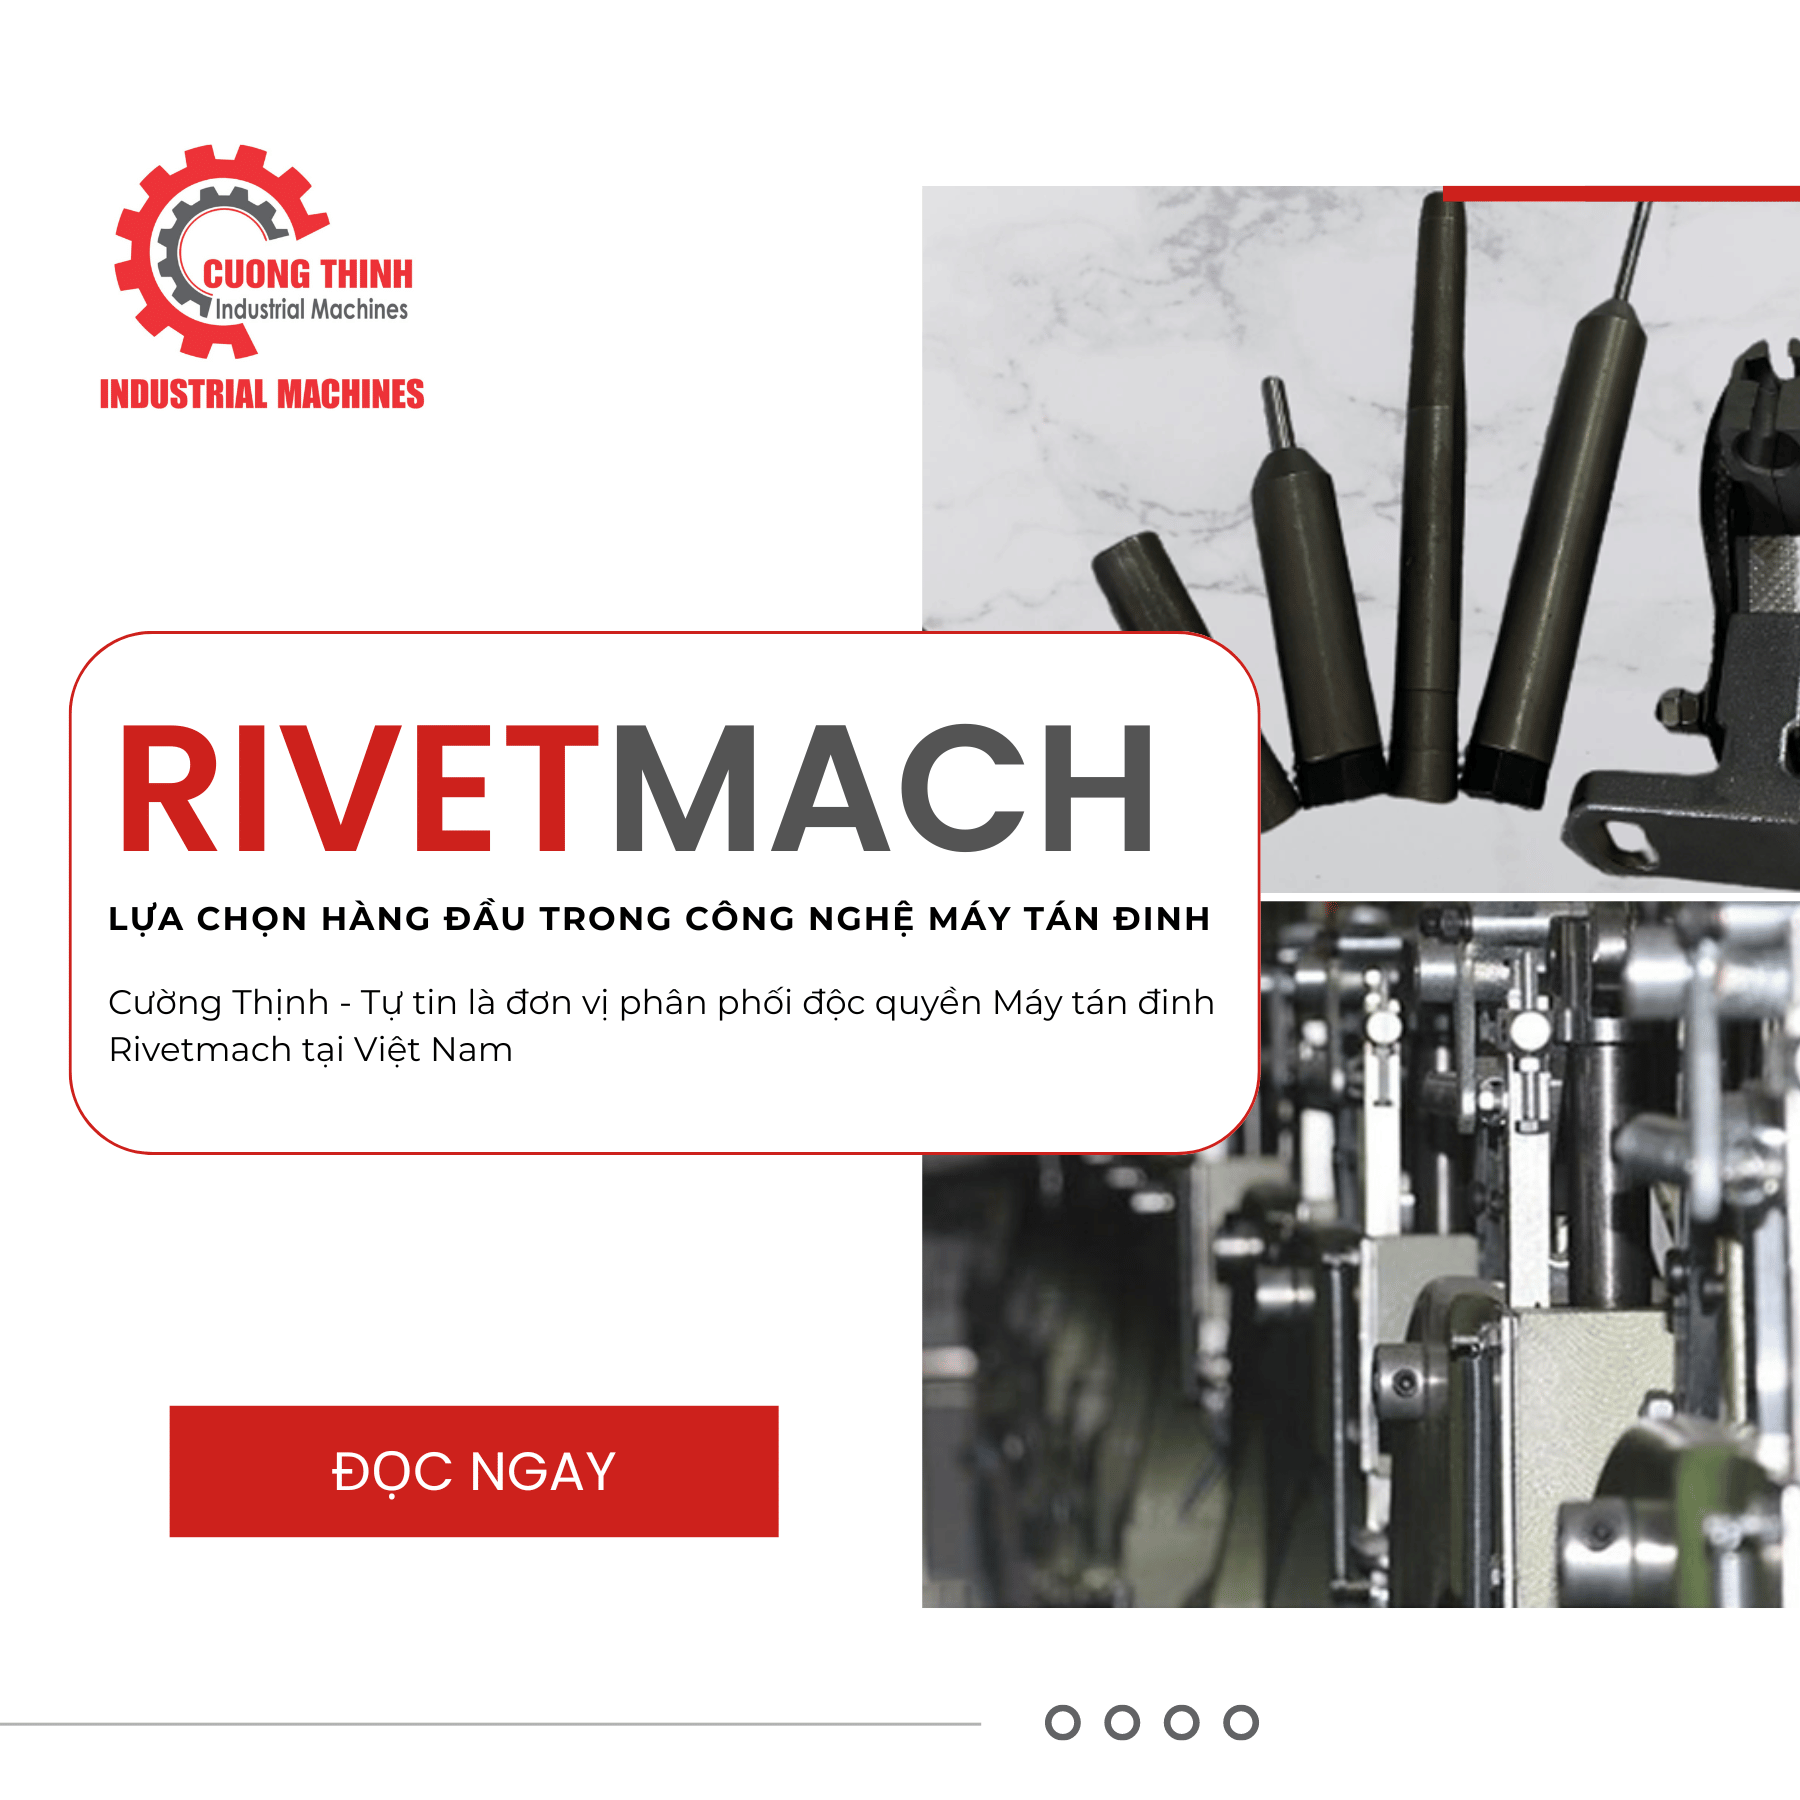 Rivetmach - Lựa Chọn Hàng Đầu Trong Công Nghệ Máy Tán Đinh